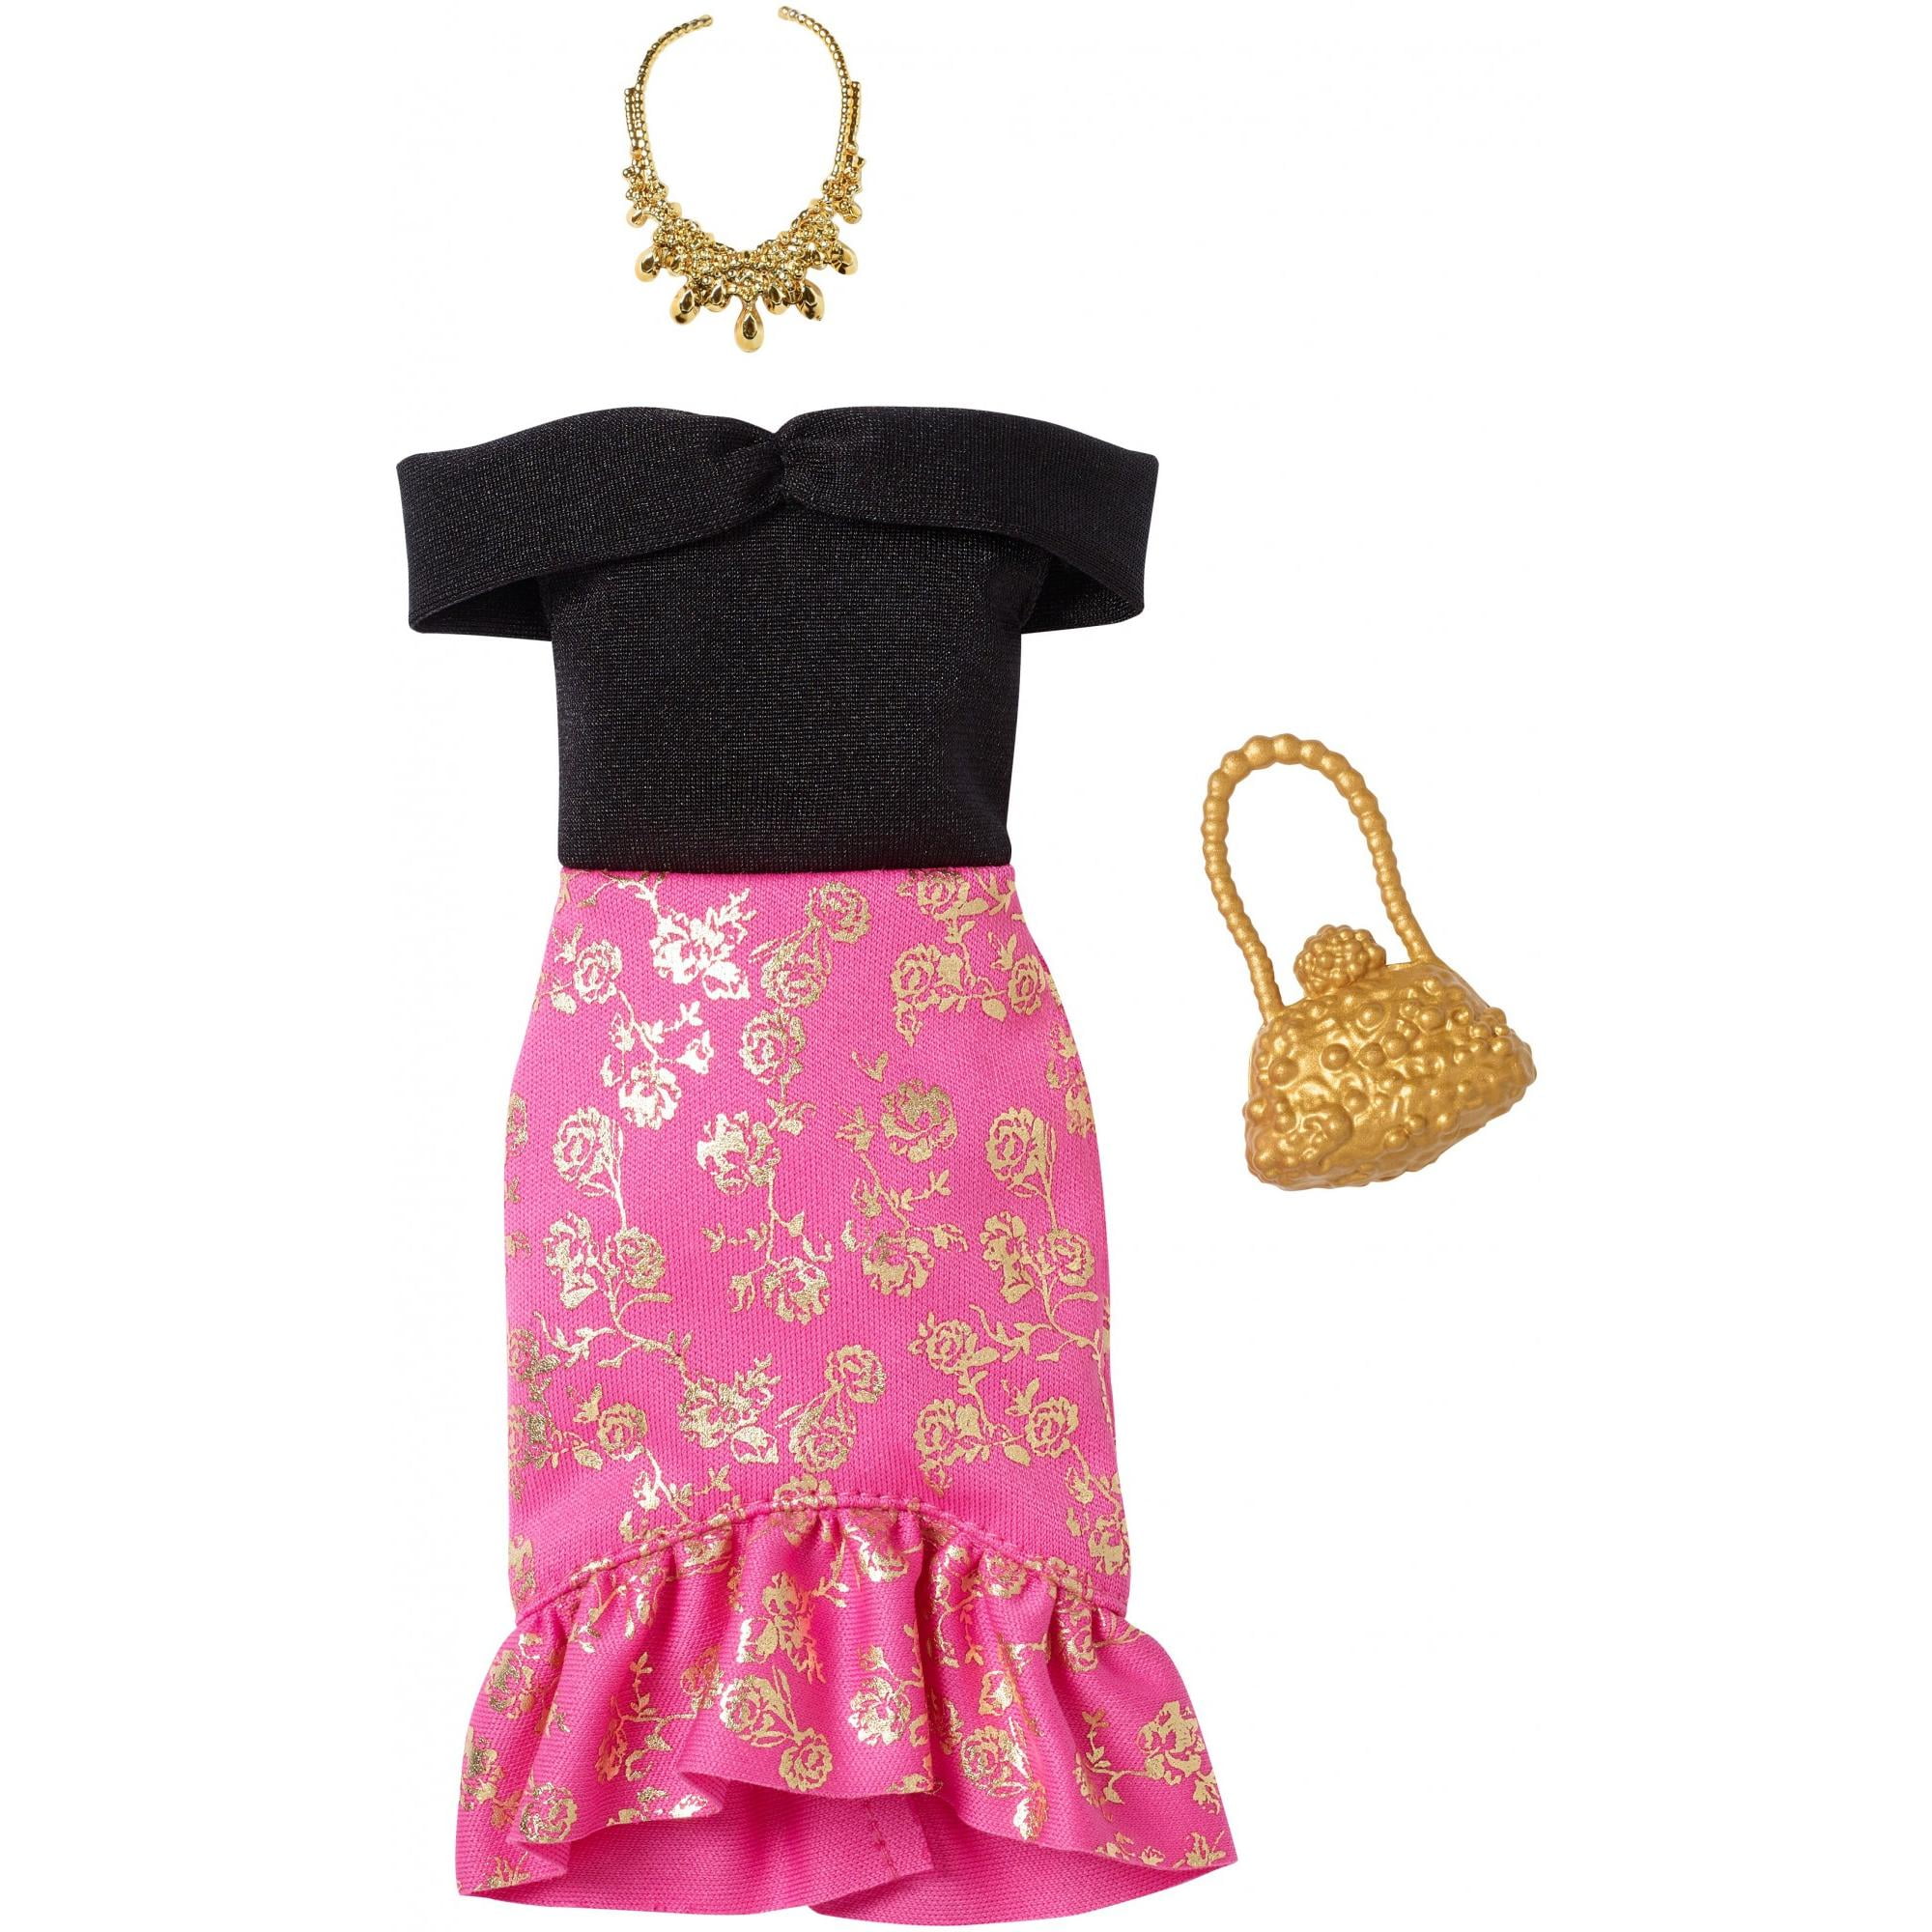 Одежда кукла барби: Обувь, одежда и аксессуары для кукол Барби и Кена (Barbie & Ken)